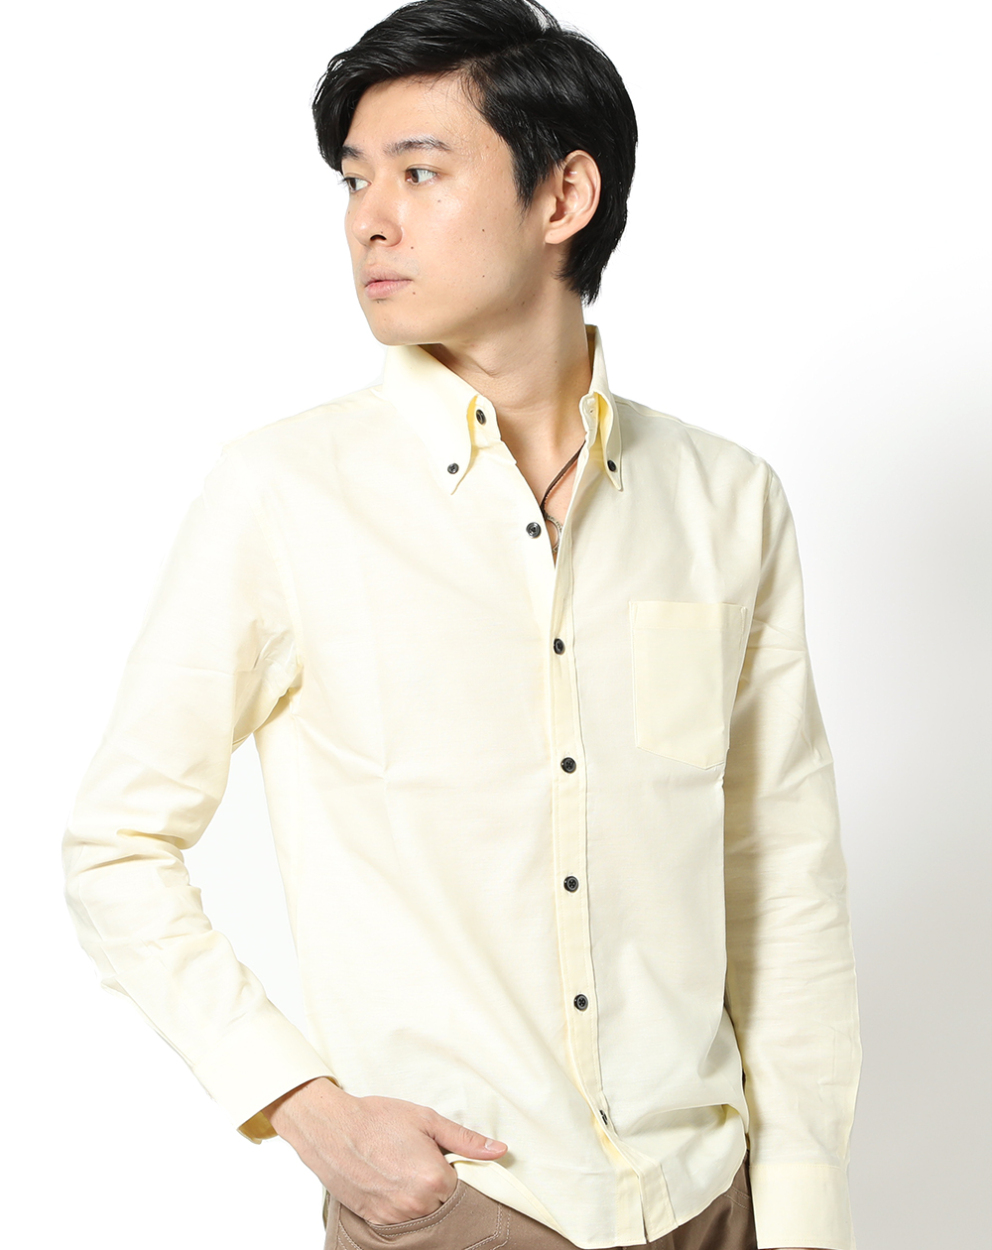 オックスフォードシャツ 日本製 綿100% イケオジ シャツ メンズ 